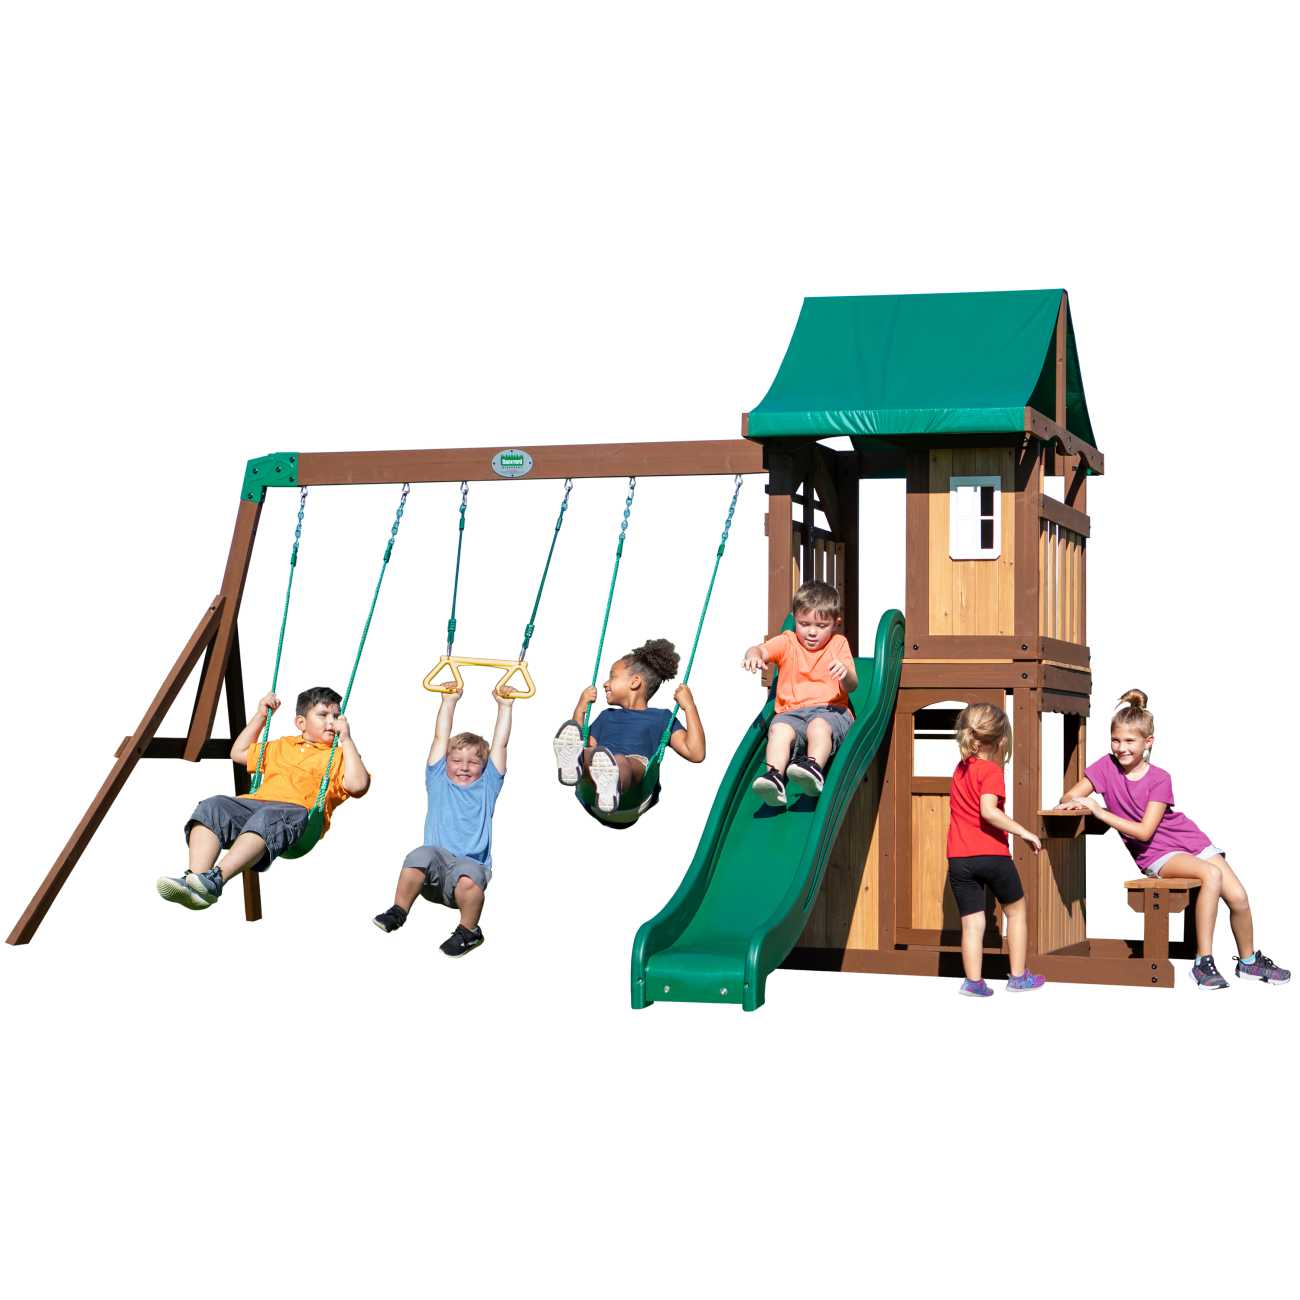 Backyard Spielturm Lakewood, Spielturm mit Schaukel für Kinder im Garten